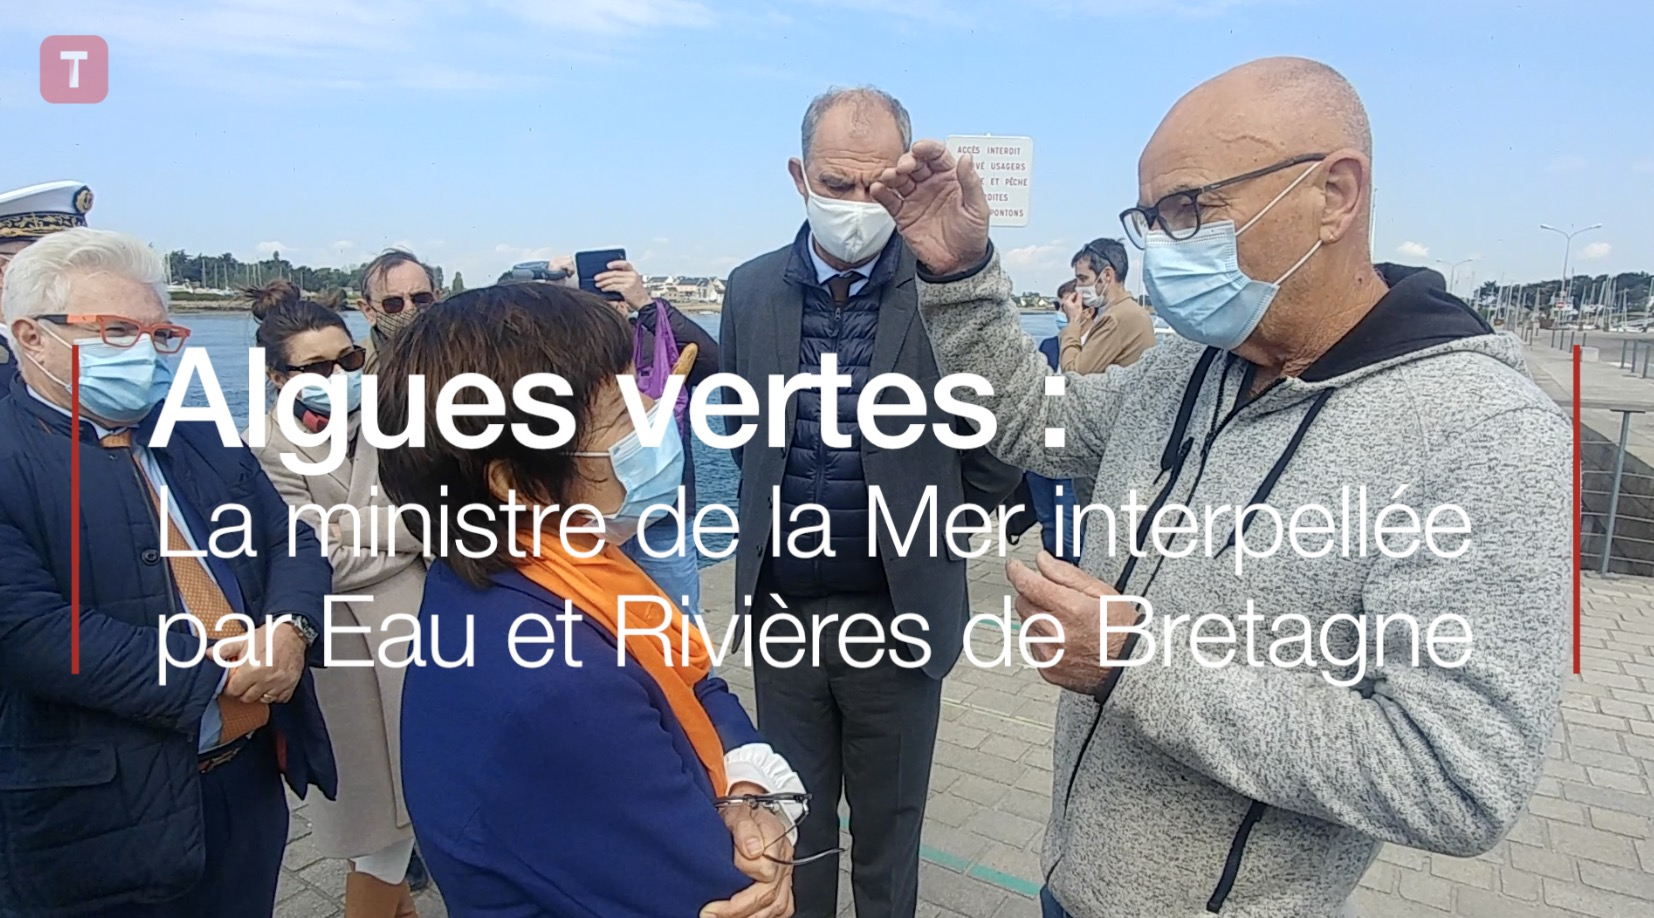  Algues vertes : la ministre de la Mer interpellée par Eau et Rivières de Bretagne (Le Télégramme)